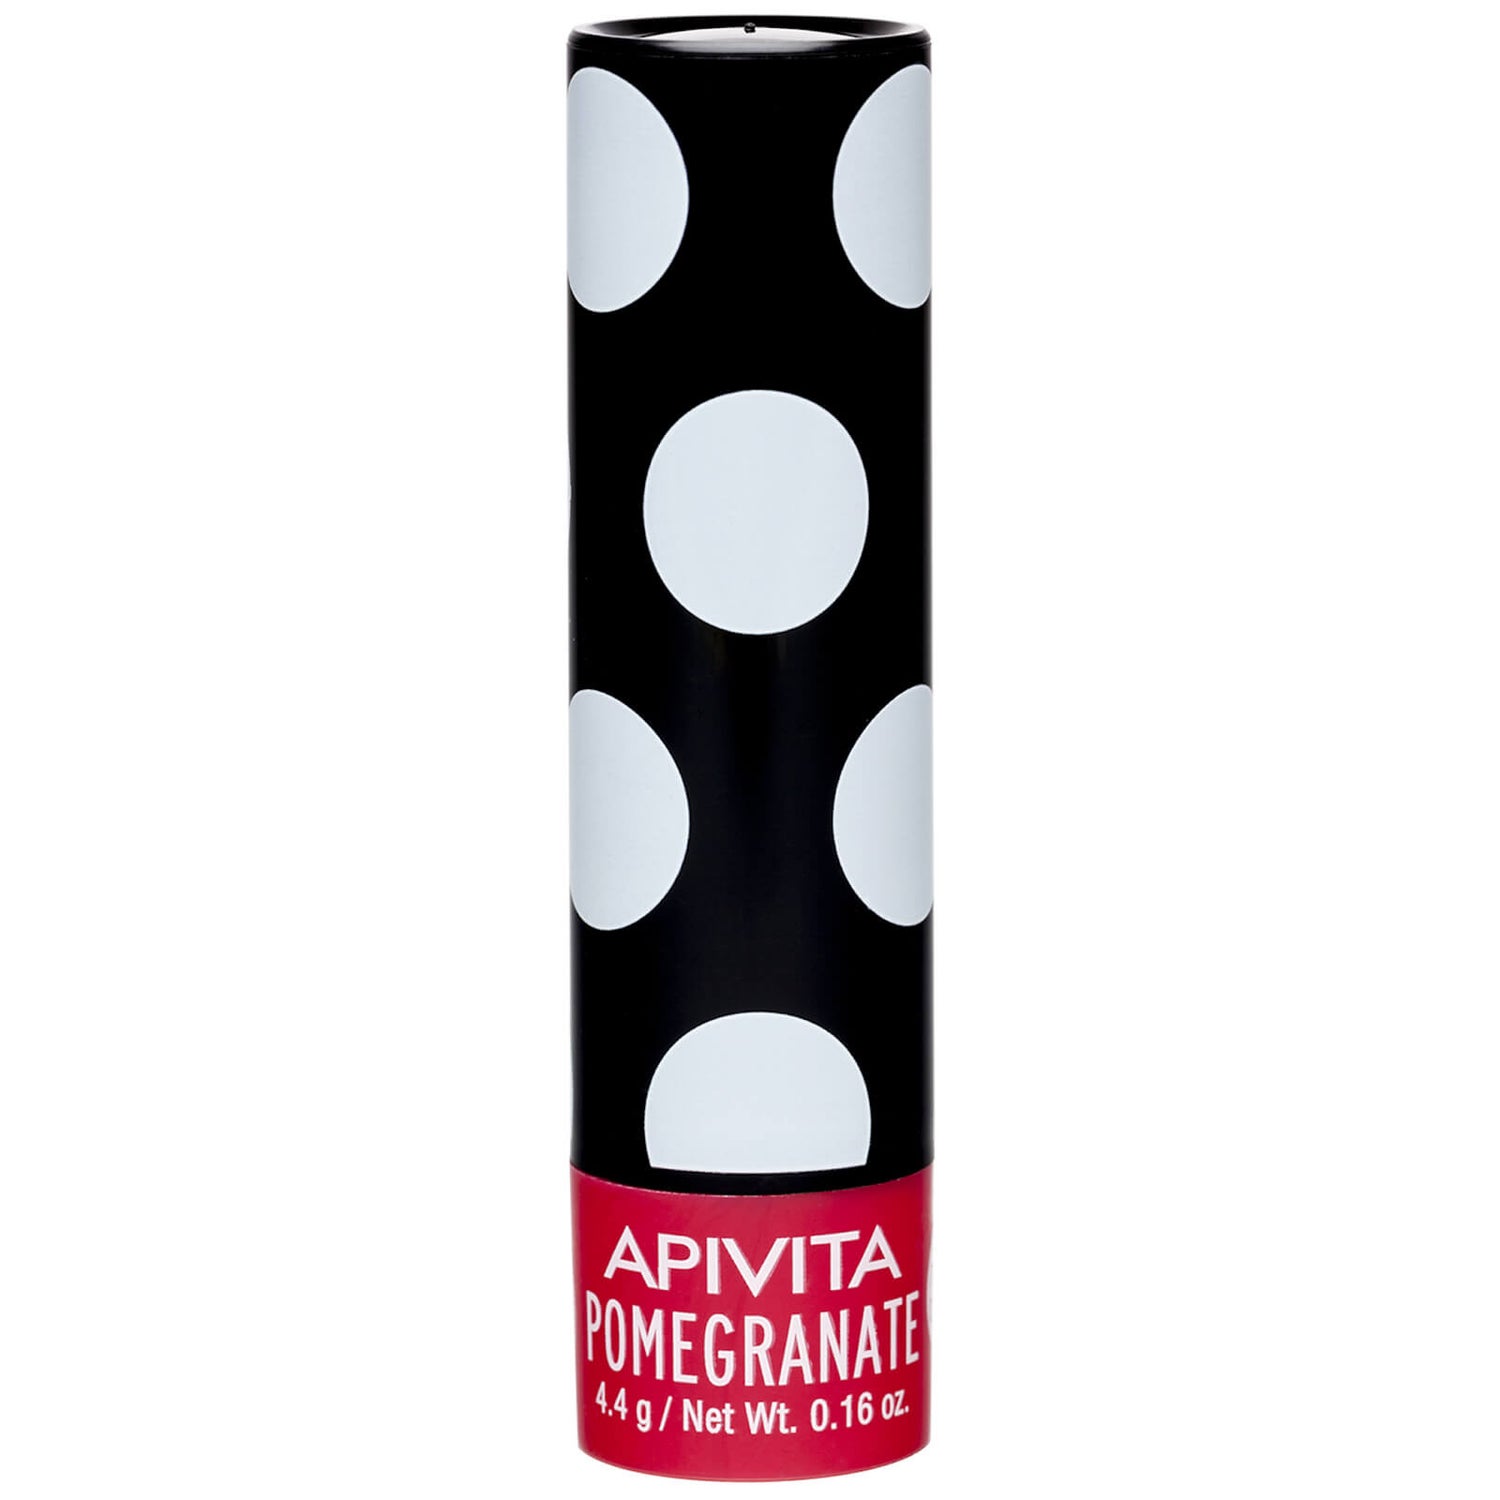 Cuidado de labios de APIVITA - granada 4,4 g